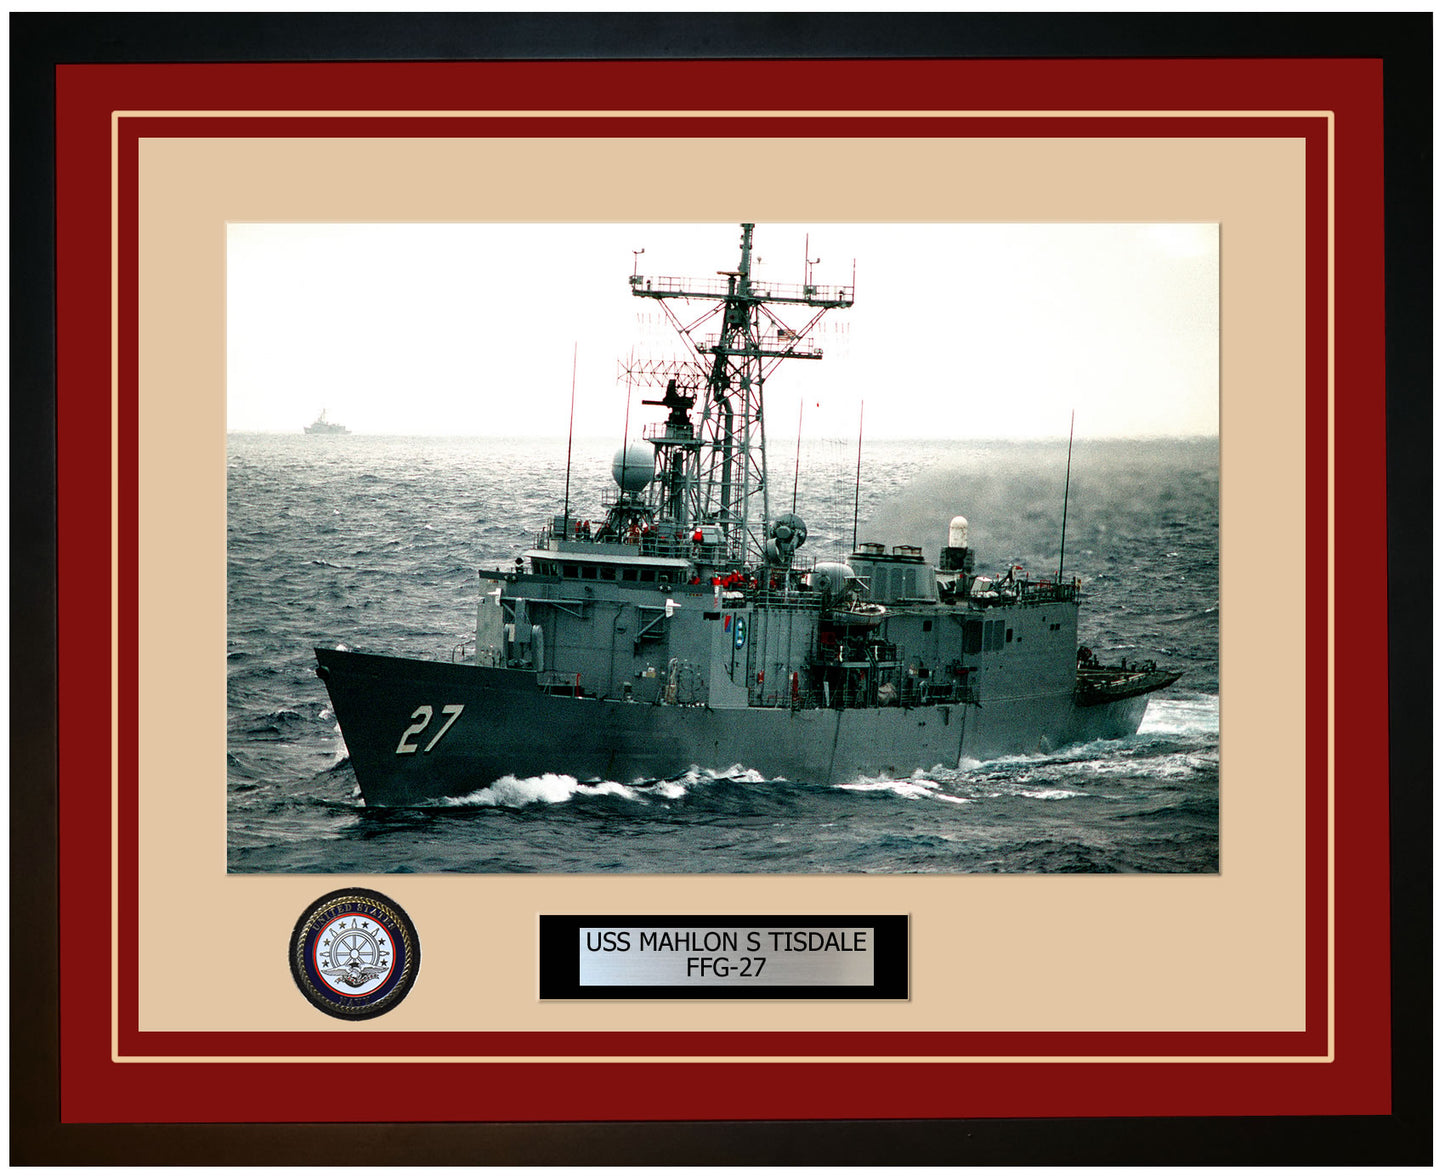 USS MAHLON S TISDALE FFG-27 Framed Navy Ship Photo Burgundy